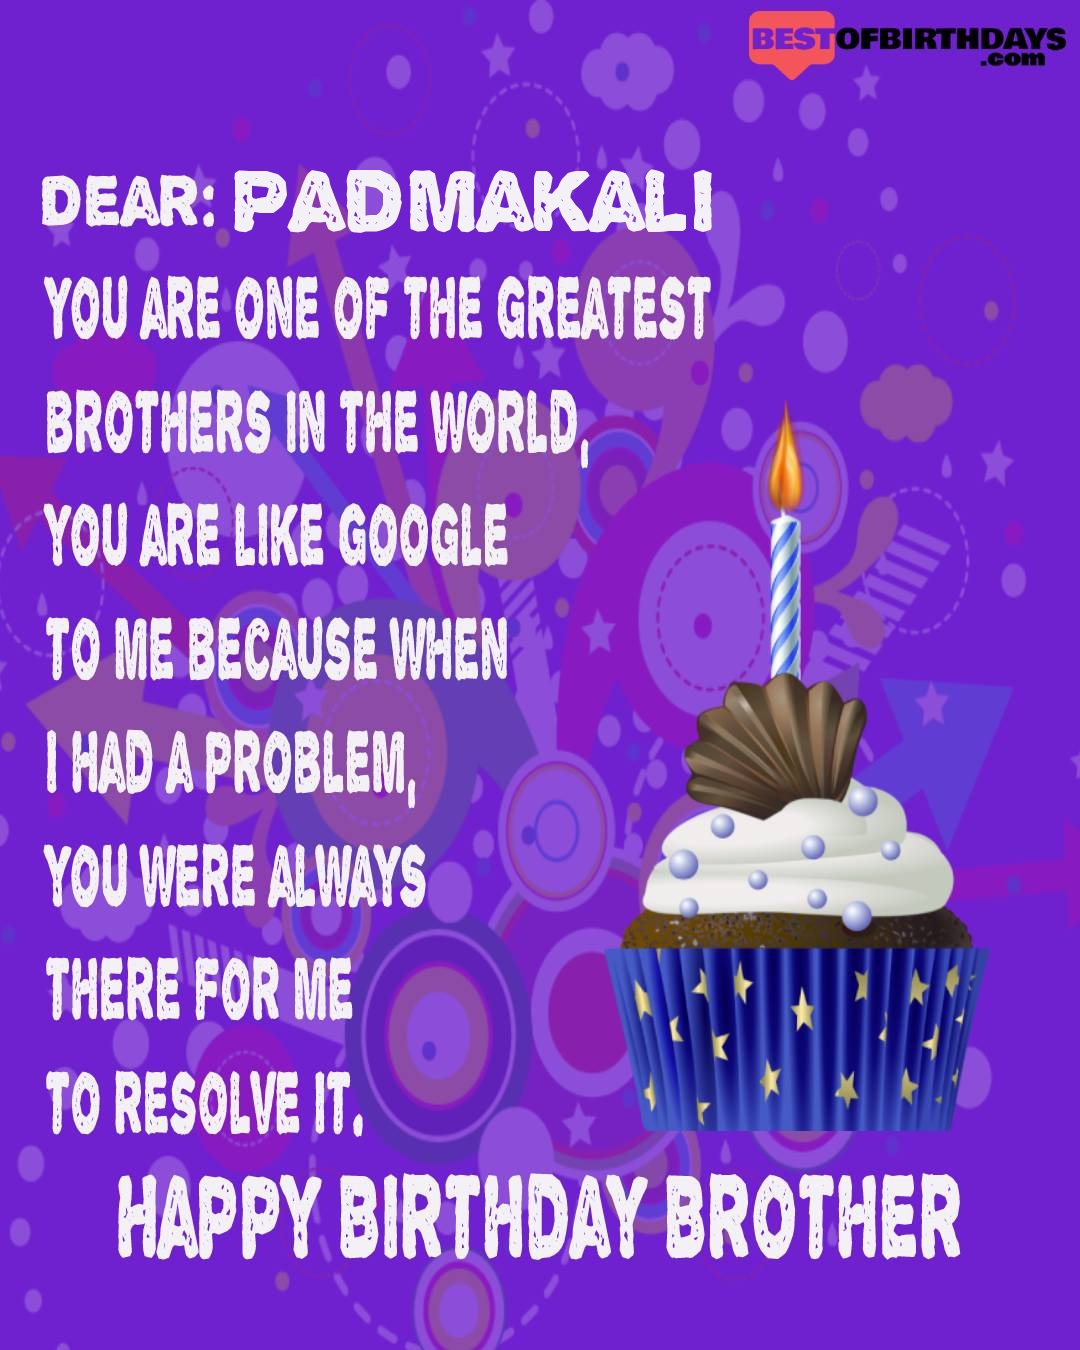 Happy birthday padmakali bhai brother bro